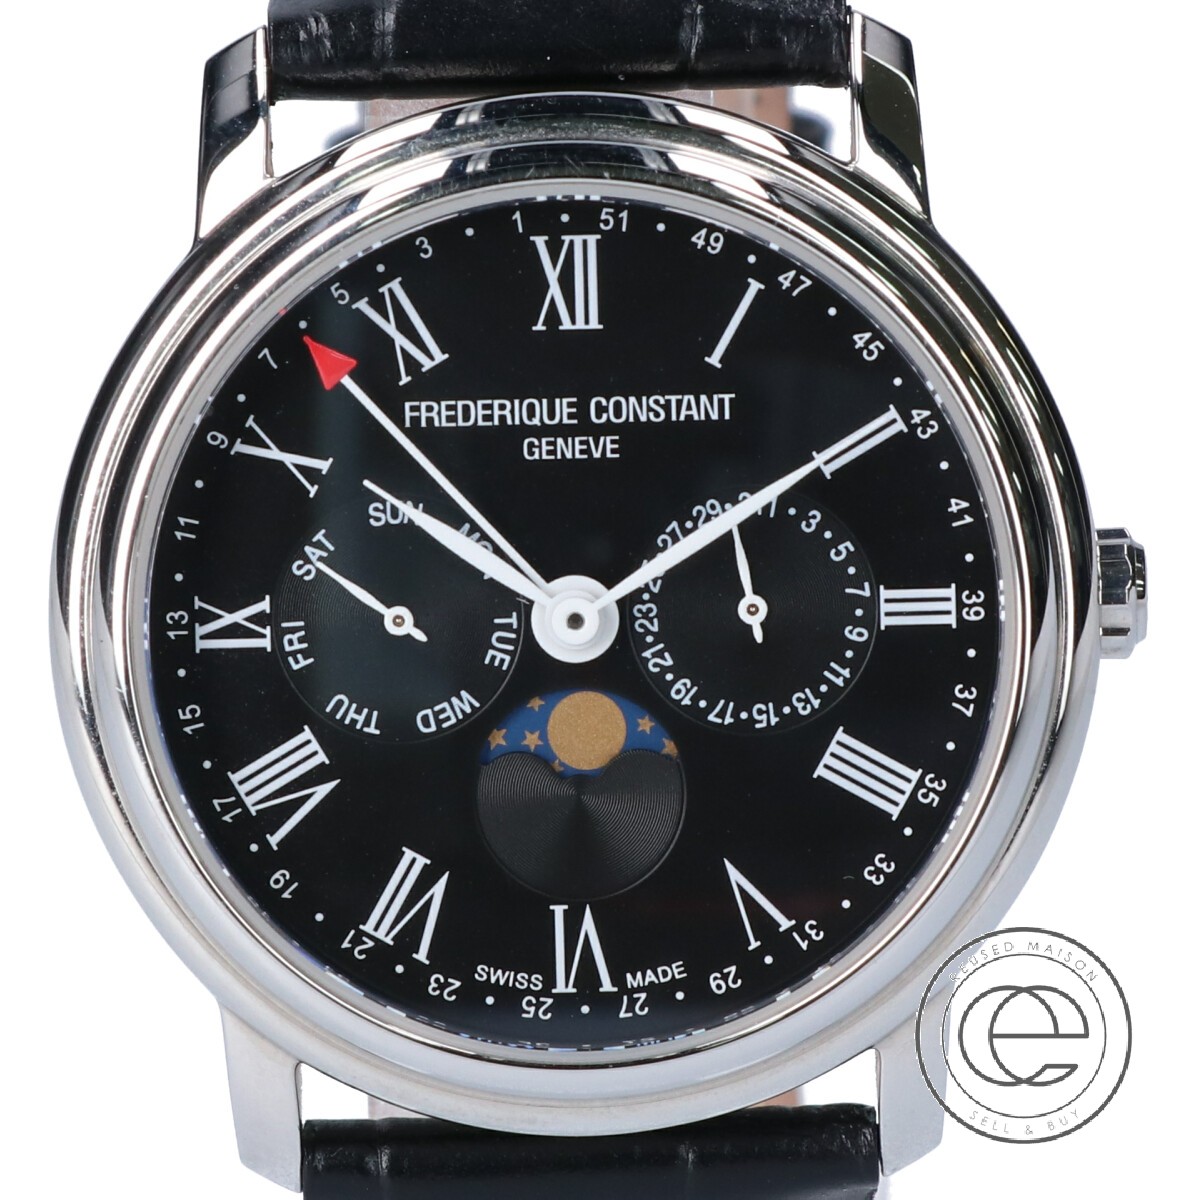 フレデリックコンスタントの270BR4P6 クラシックビジネスタイマー ムーンフェイズ クオーツ腕時計の買取実績です。